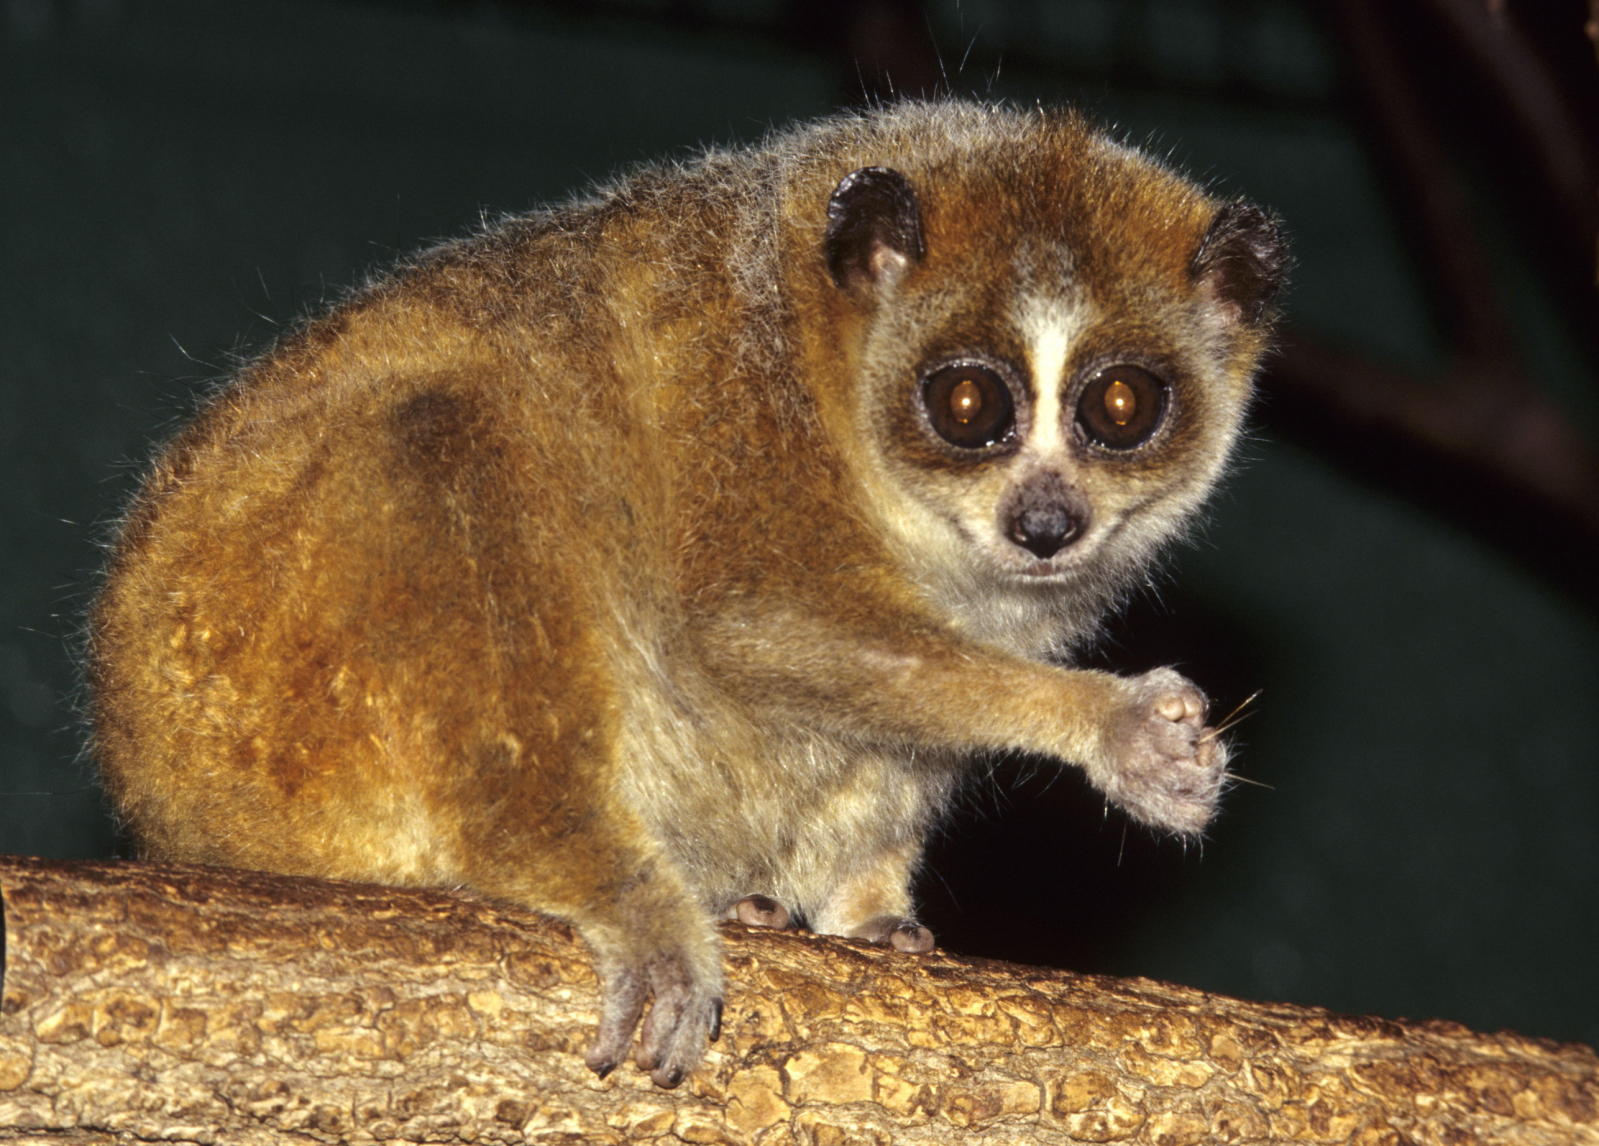 Pygmy slow loris - Wikipedia